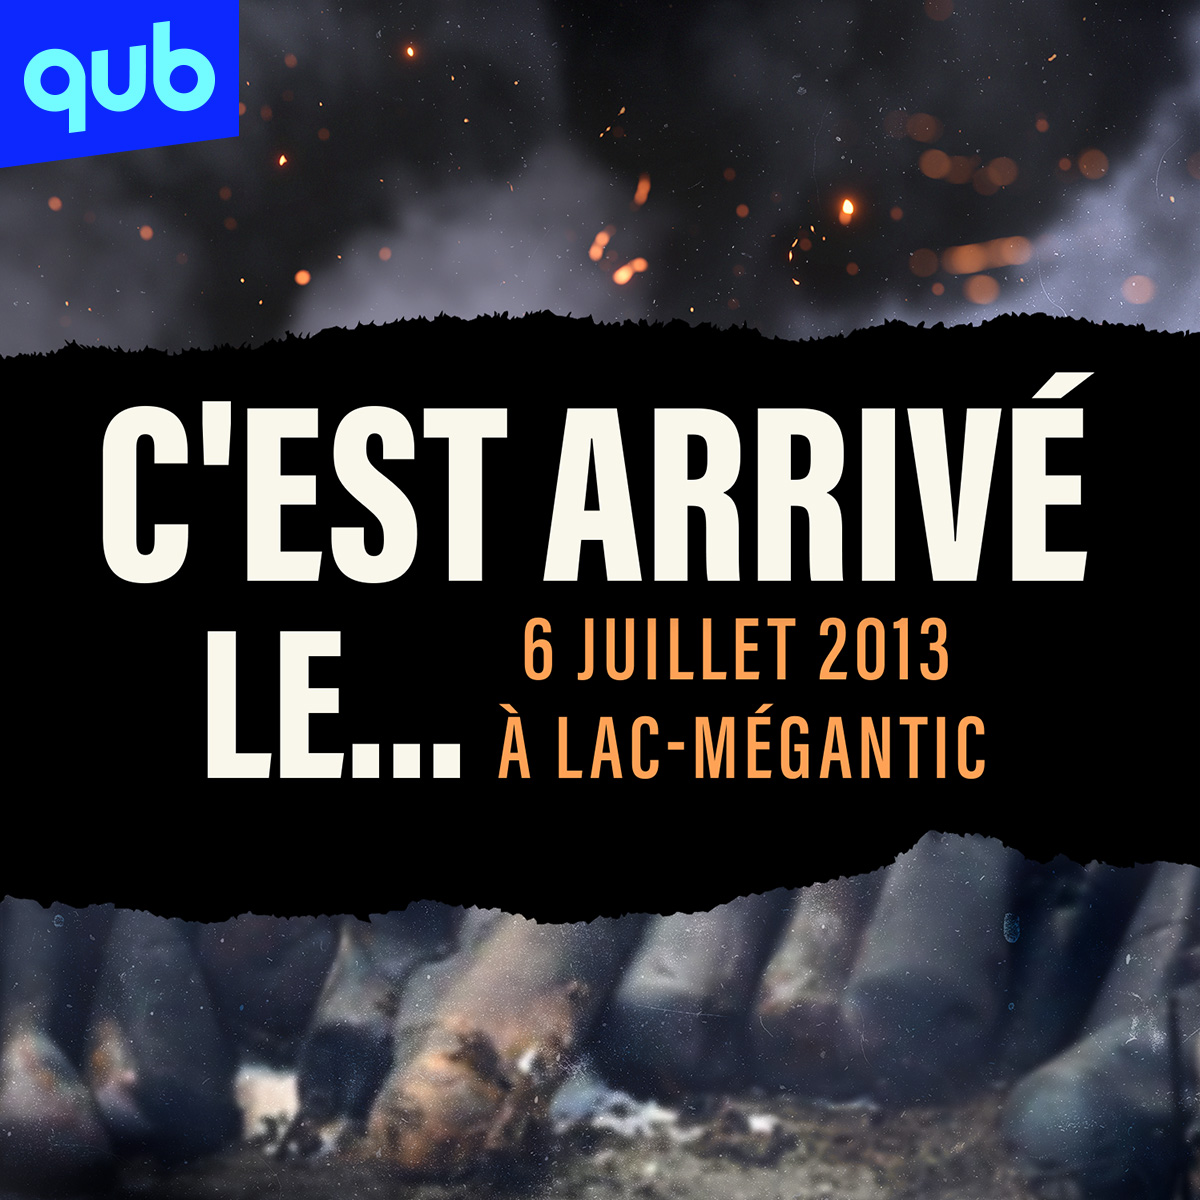 C'est arrivé le... 6 juillet 2013 à Lac-Mégantic - Bande-annonce